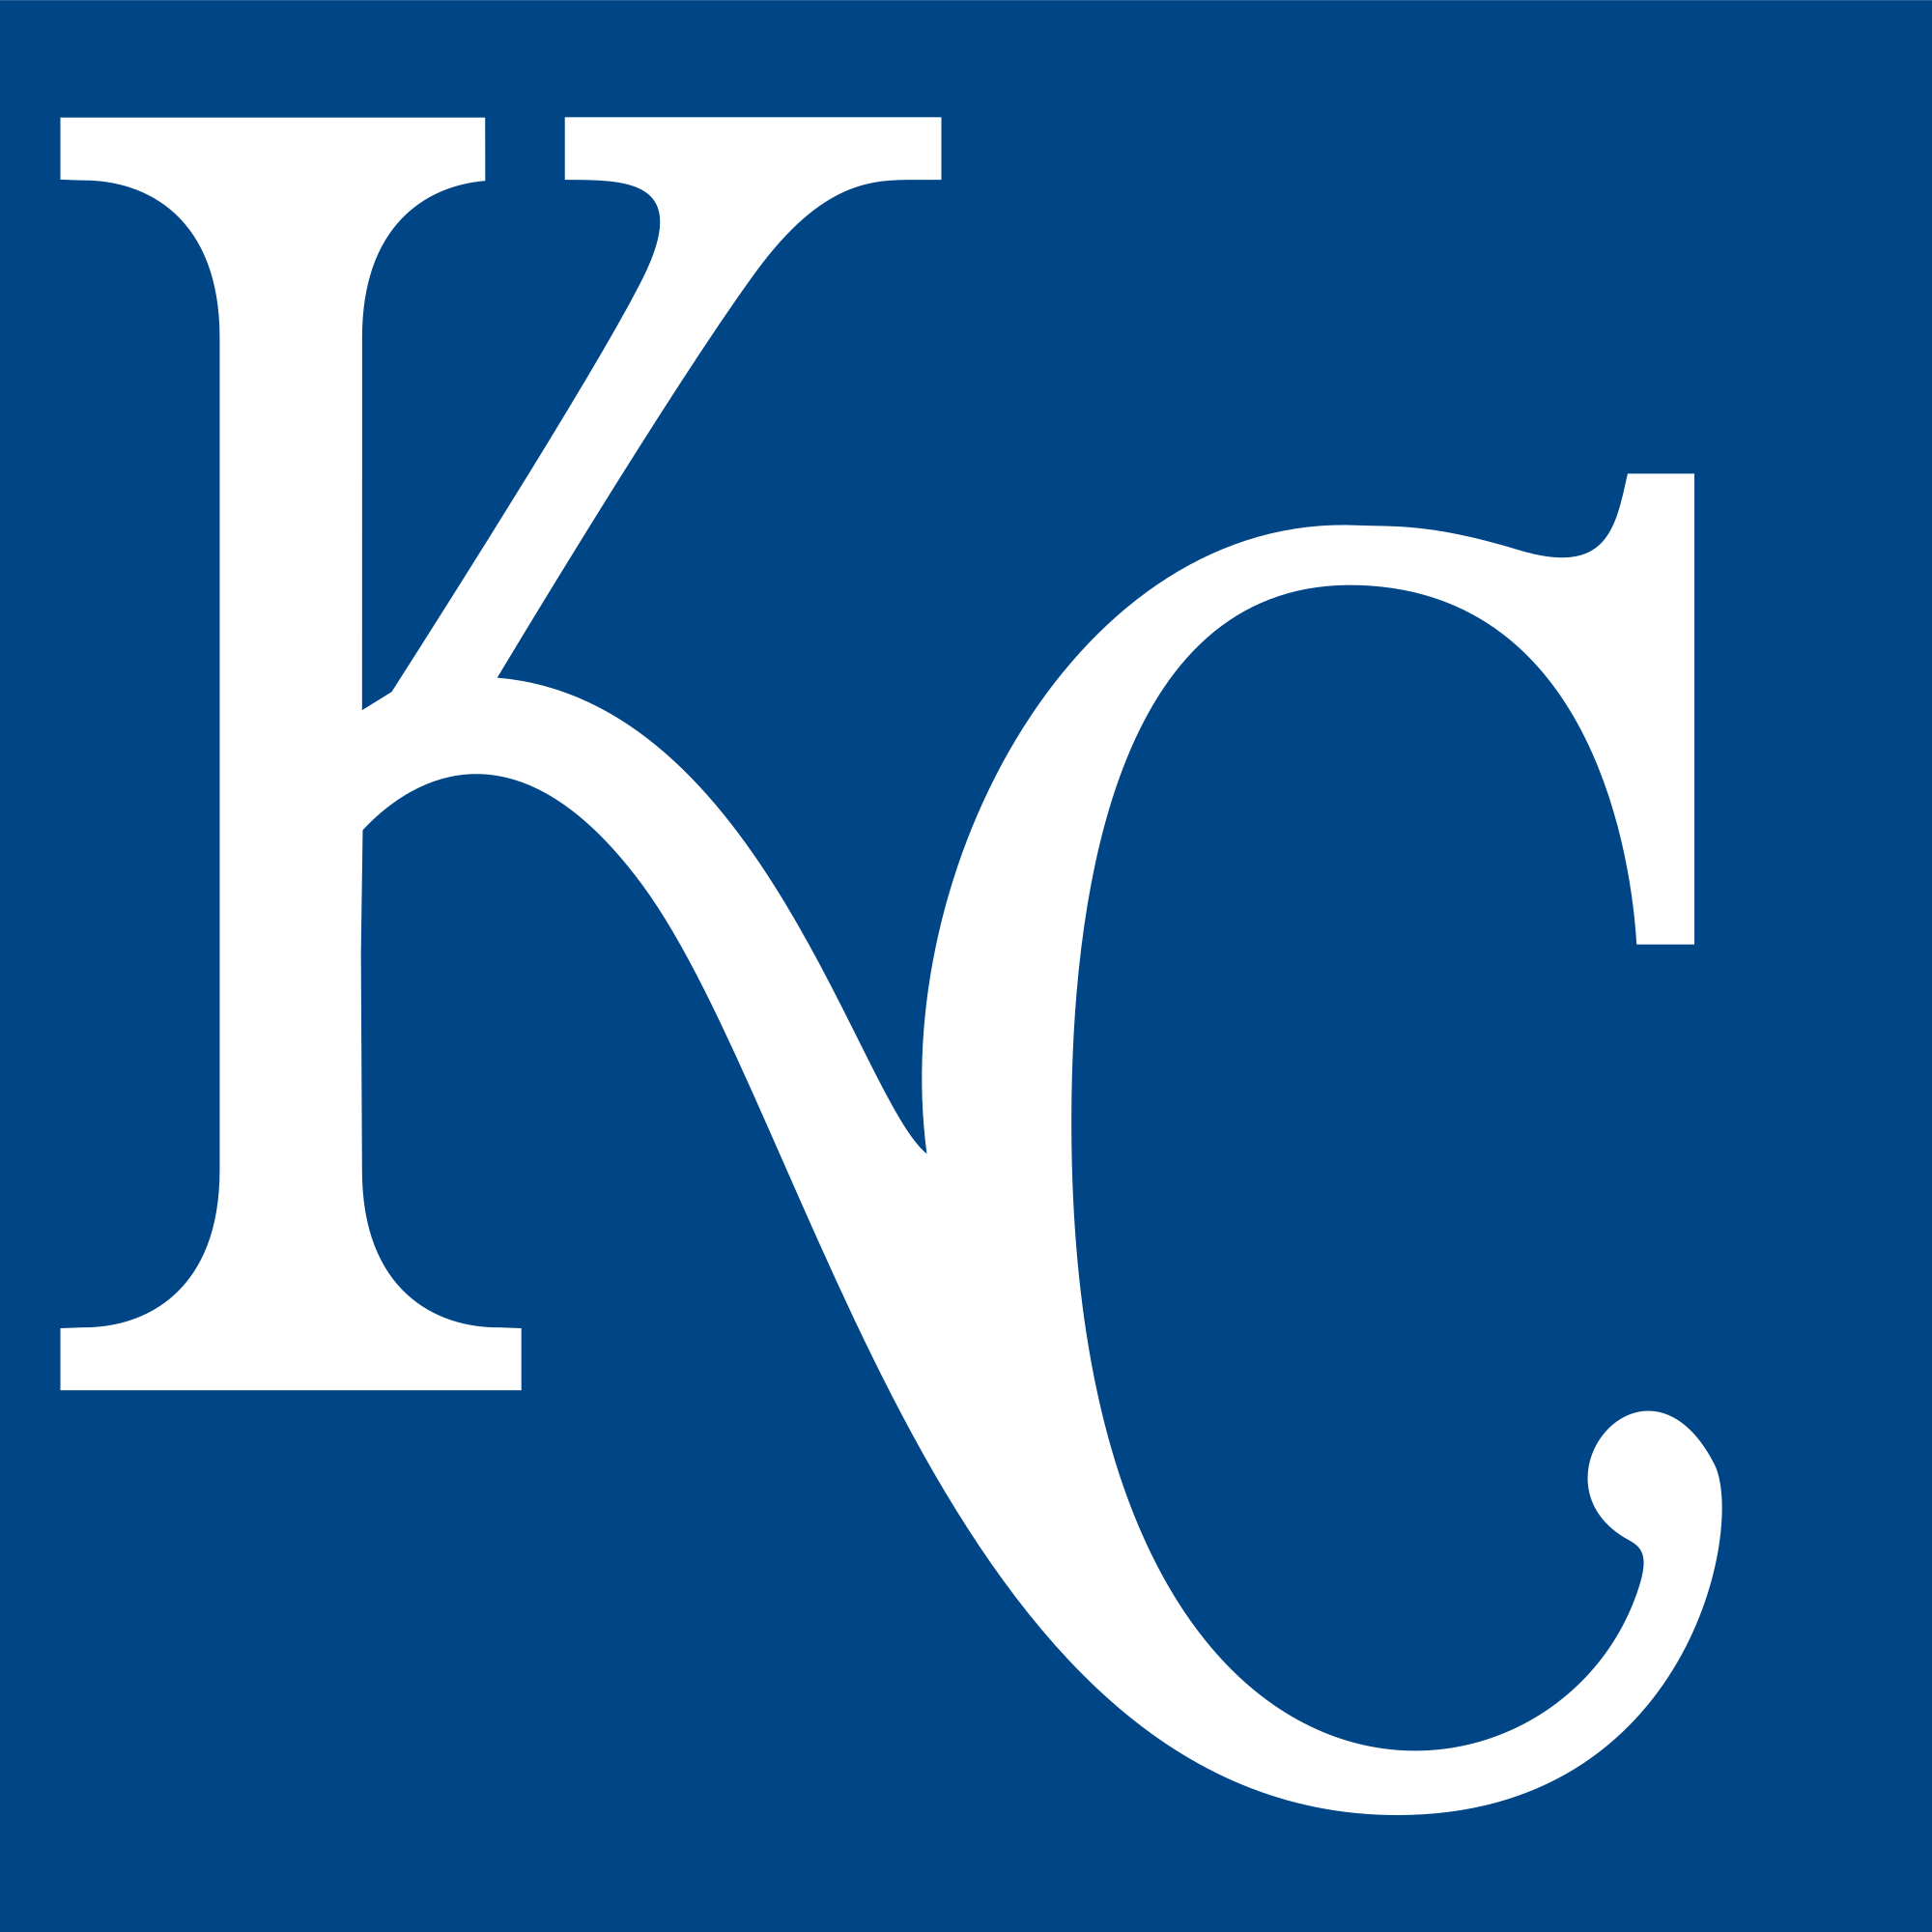 KC Royals Logo - File:Kansas City Royals Insignia.svg - Wikimedia Commons